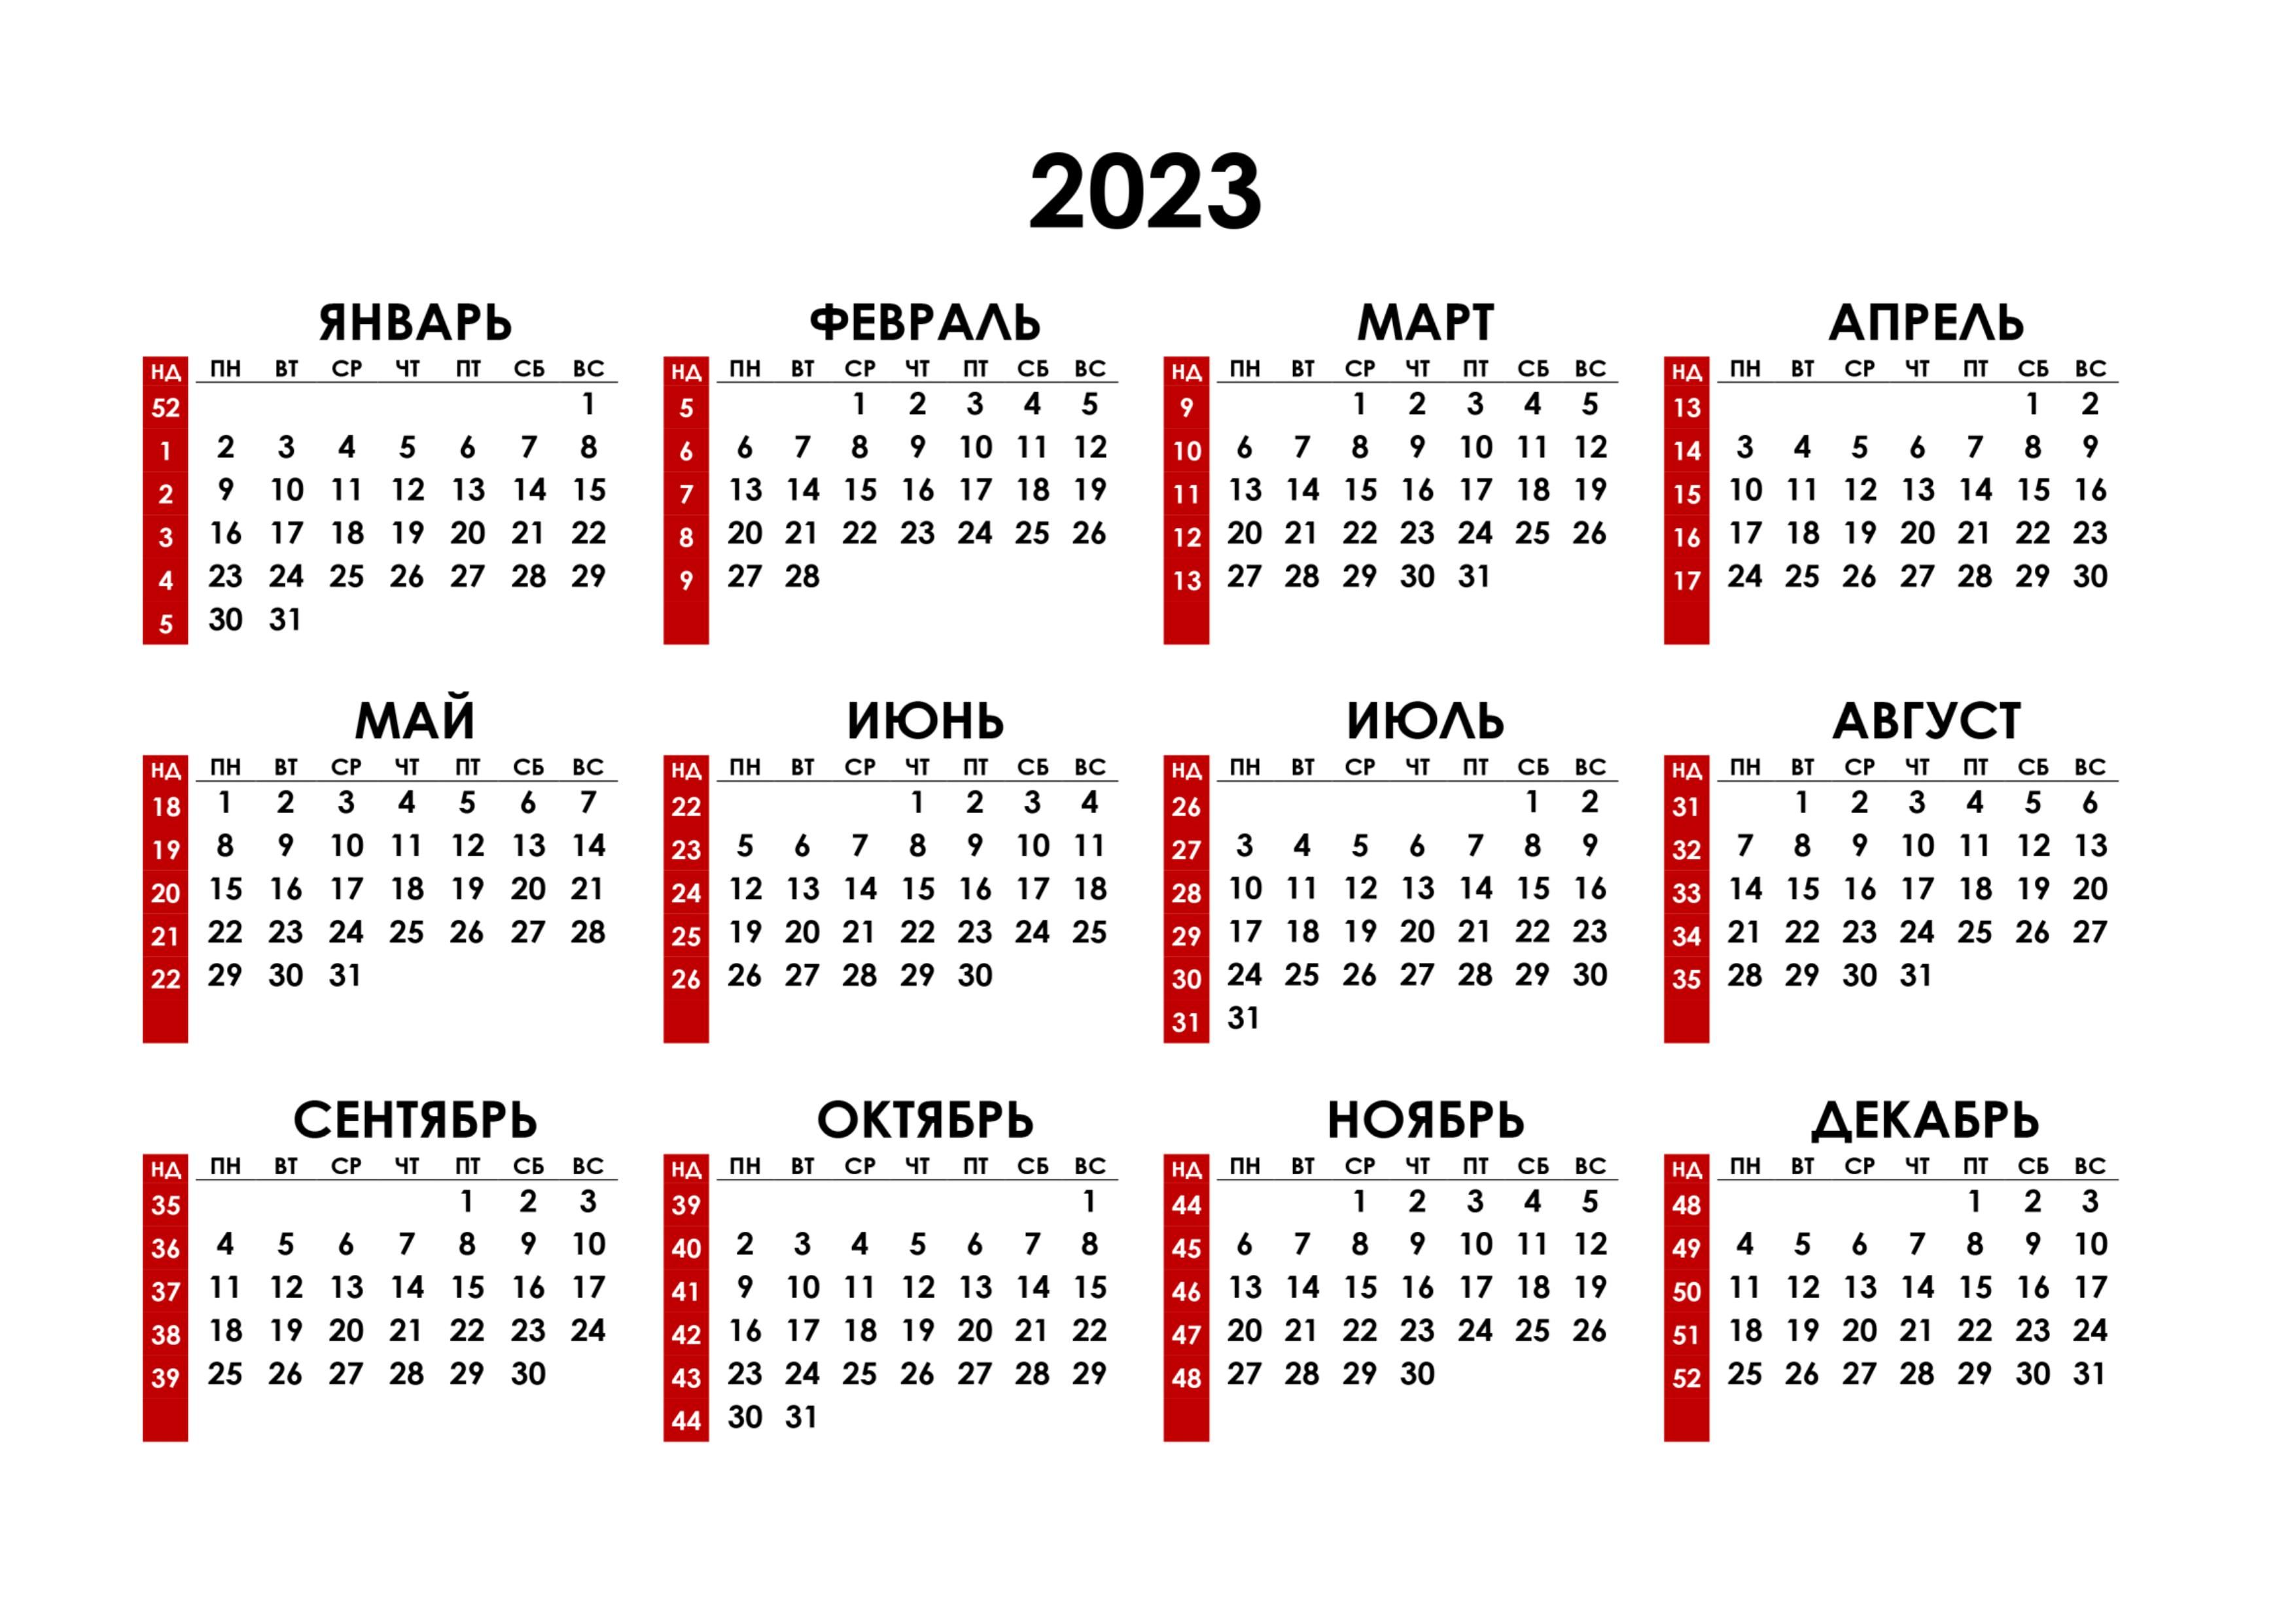 Как отмечаем праздники в 2024 году. Календарь на 2023 год. Календарь с номерами недель 2023. Календарь синомерами недель. Hrfktylfhm PF 2023 ujl.